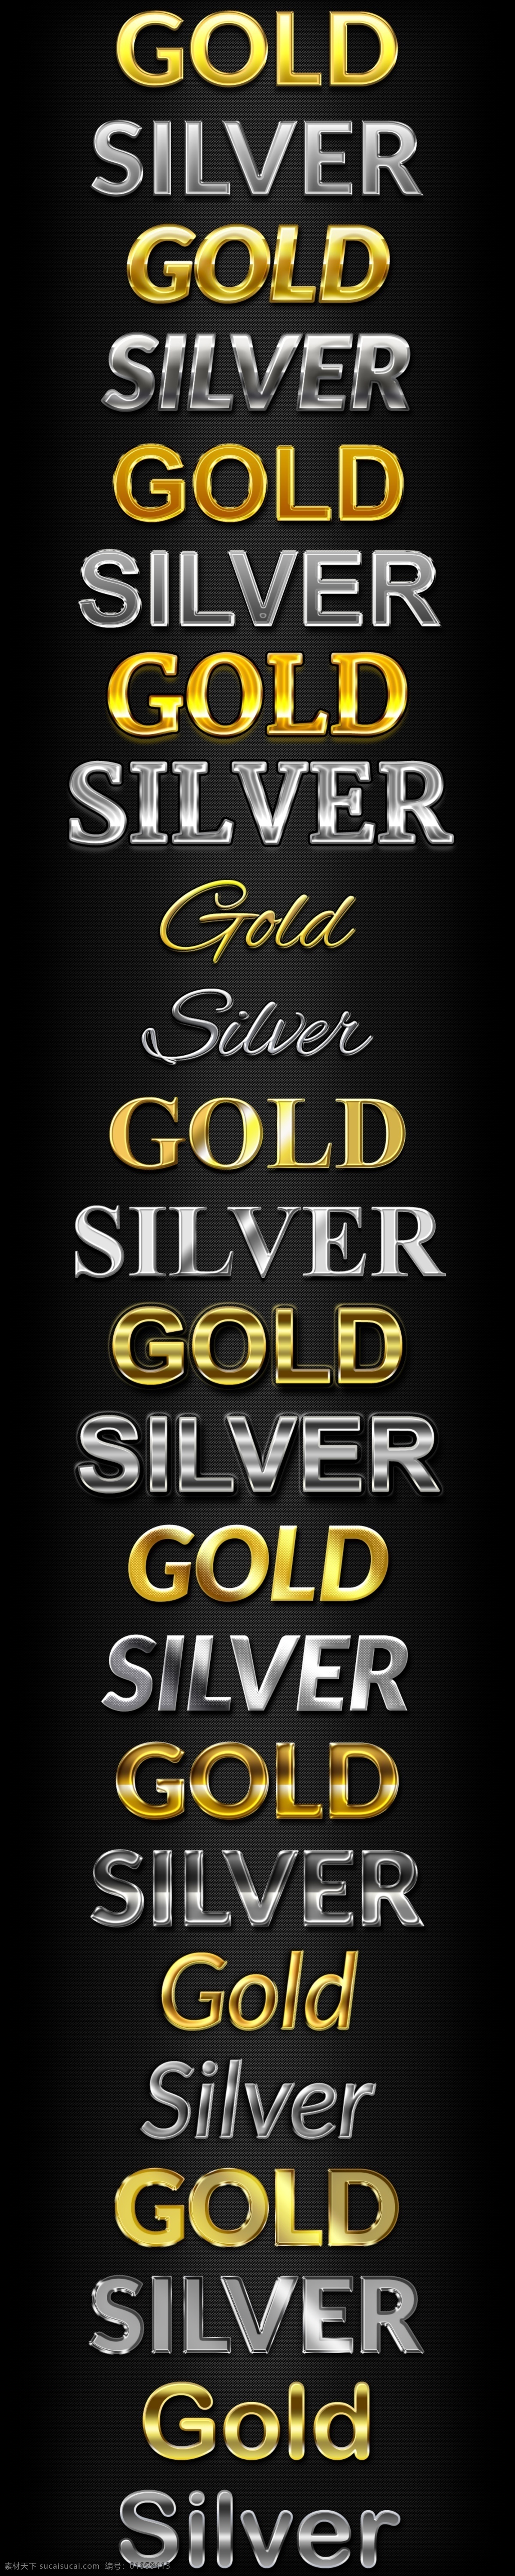 金属字体特效 质感字体 立体字 海报字体设计 电影字体设计 超酷金属字体 黄金特效 字效